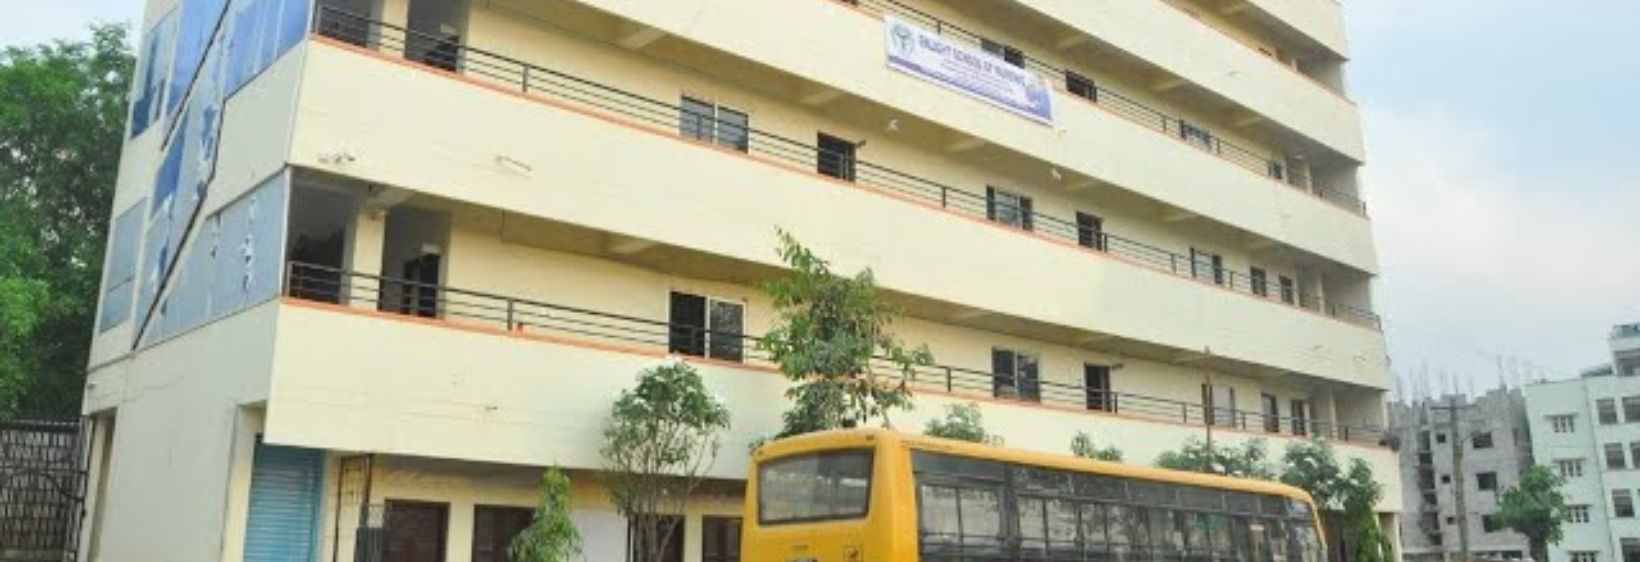 Sowrabha Institute of Nursing Sciences - Bangalore